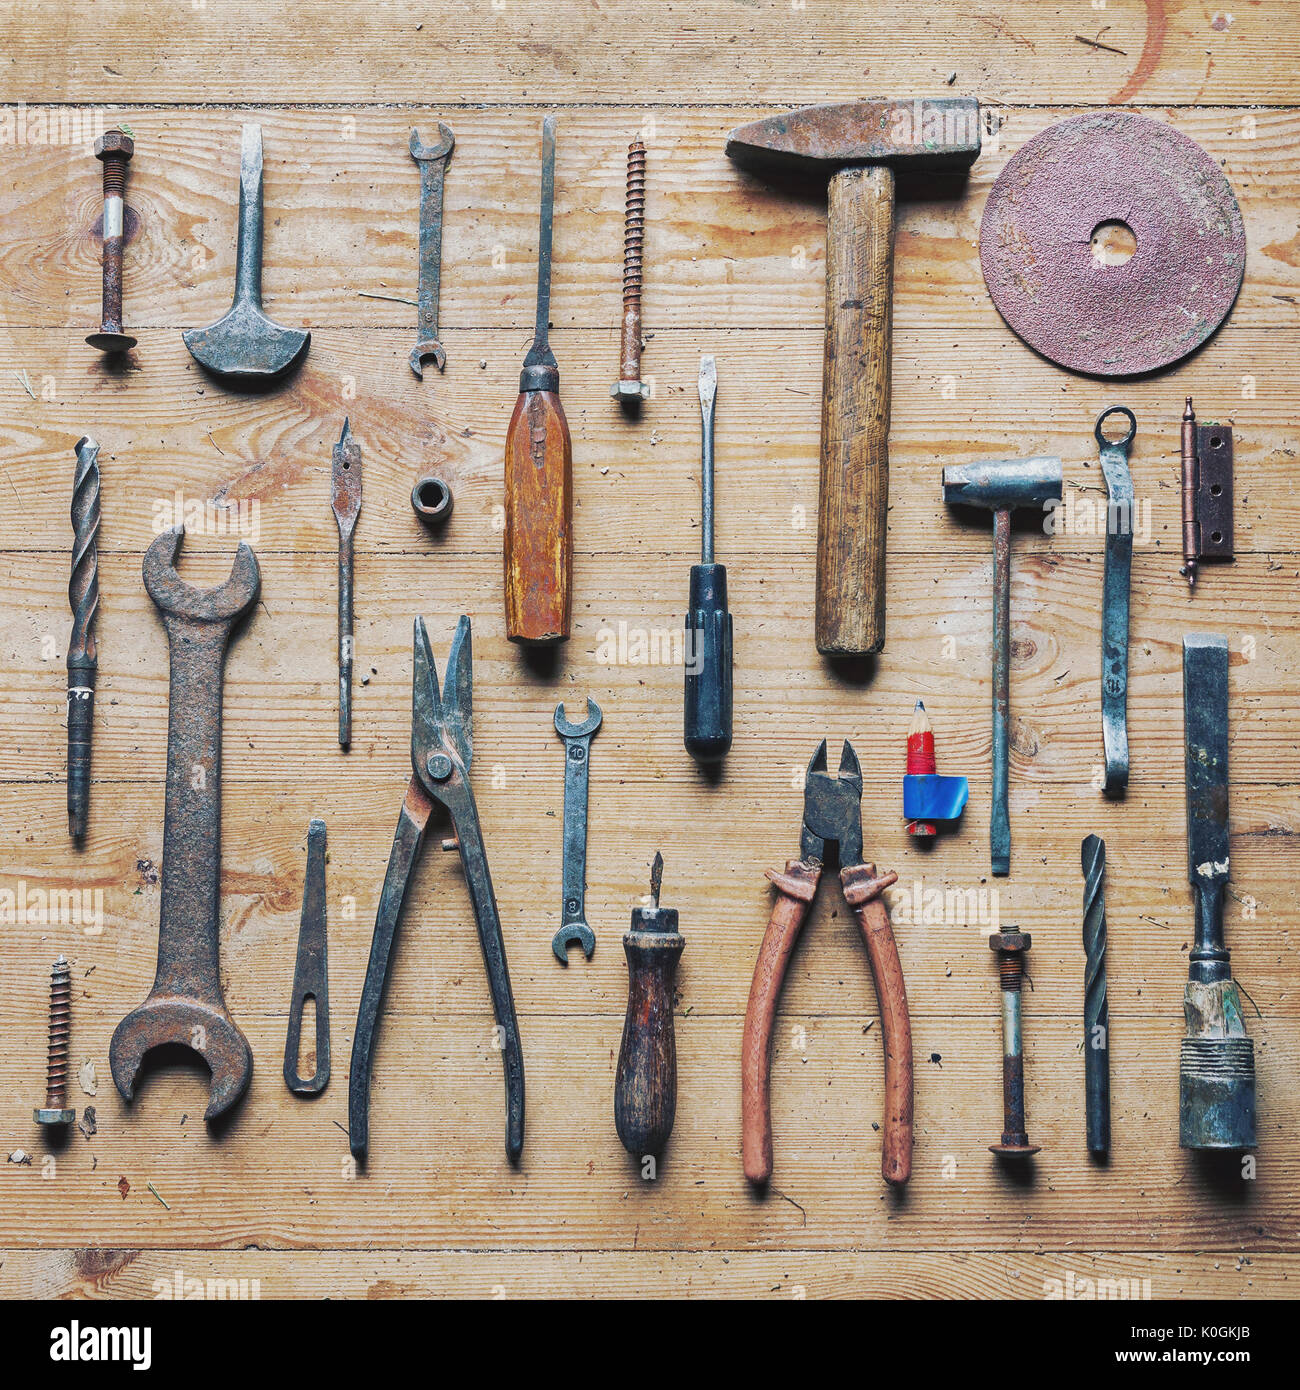 Une collection de vieux outils de réparation vintage sale bien organisé sur fond de bois, vue du dessus de propos délibéré un contraste élevé Banque D'Images